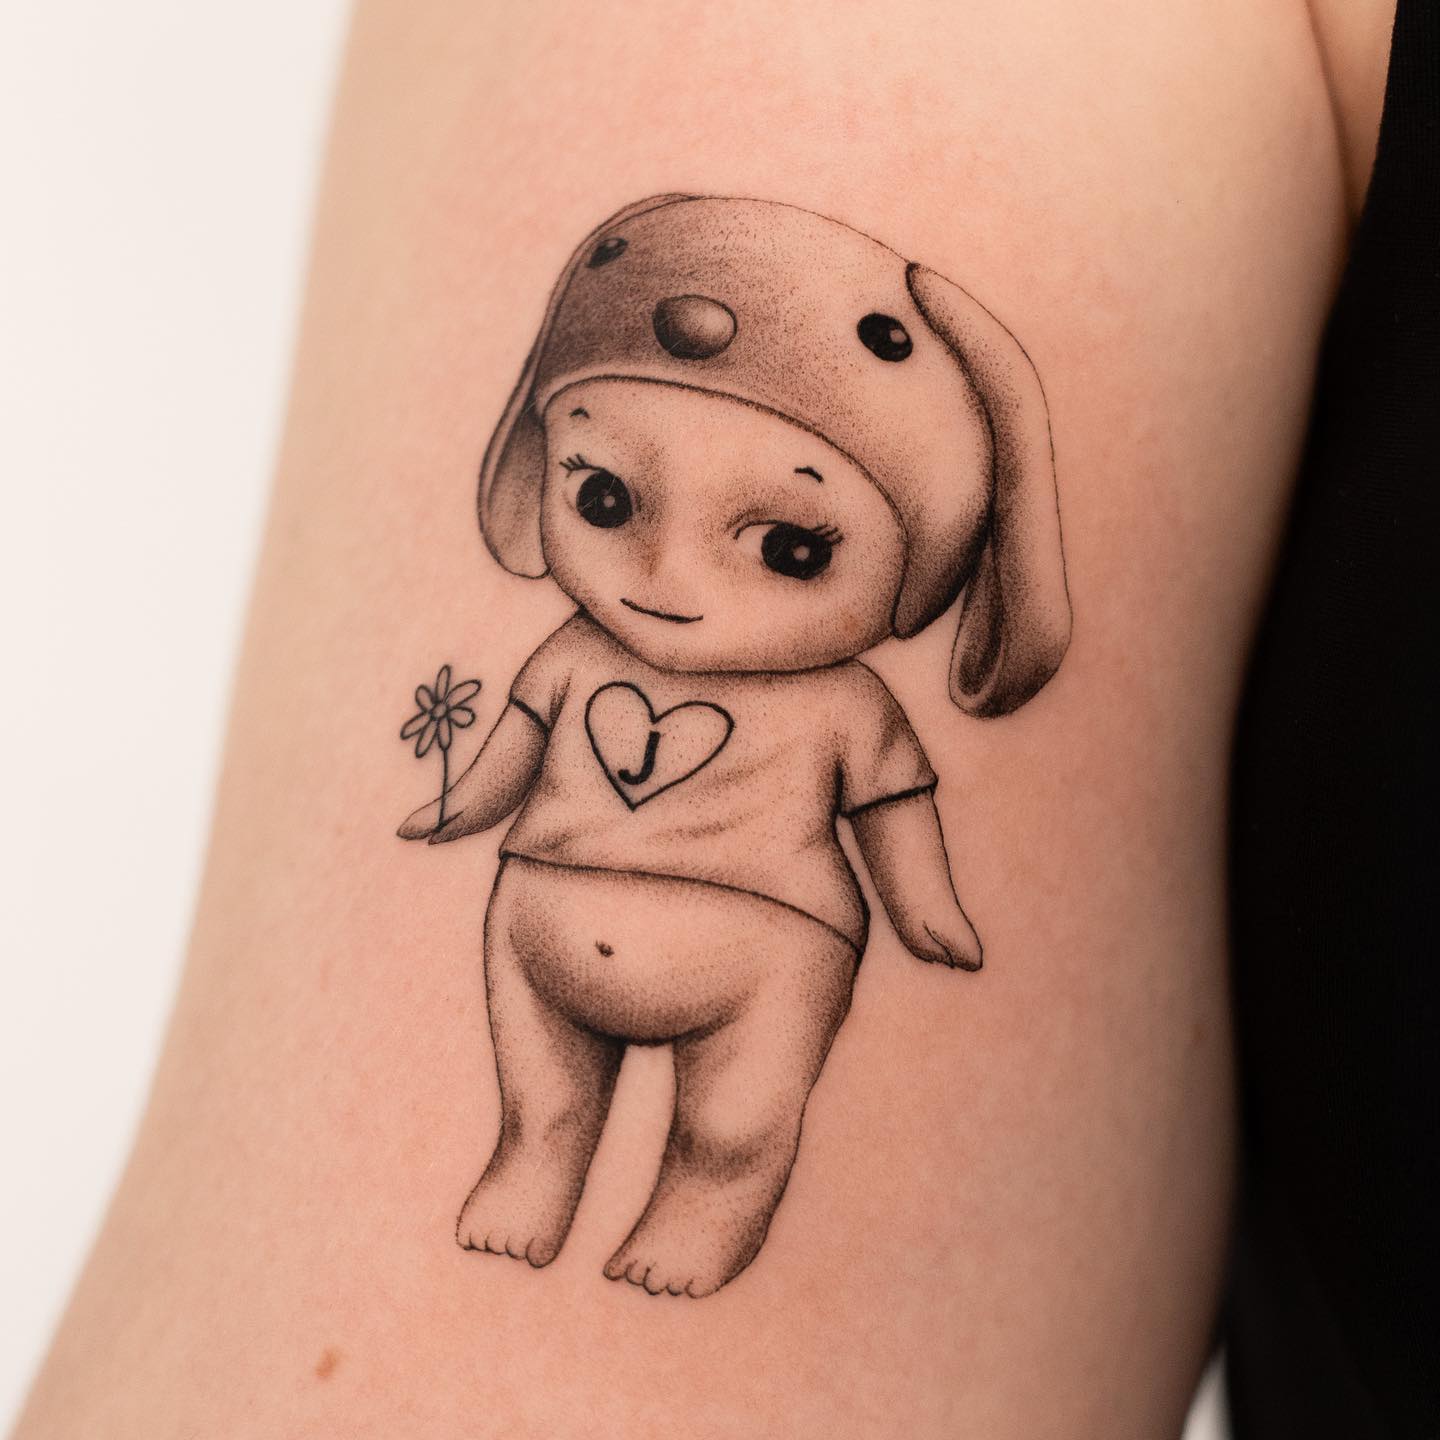 doll on arm tattoo ideas by francisss.ttt